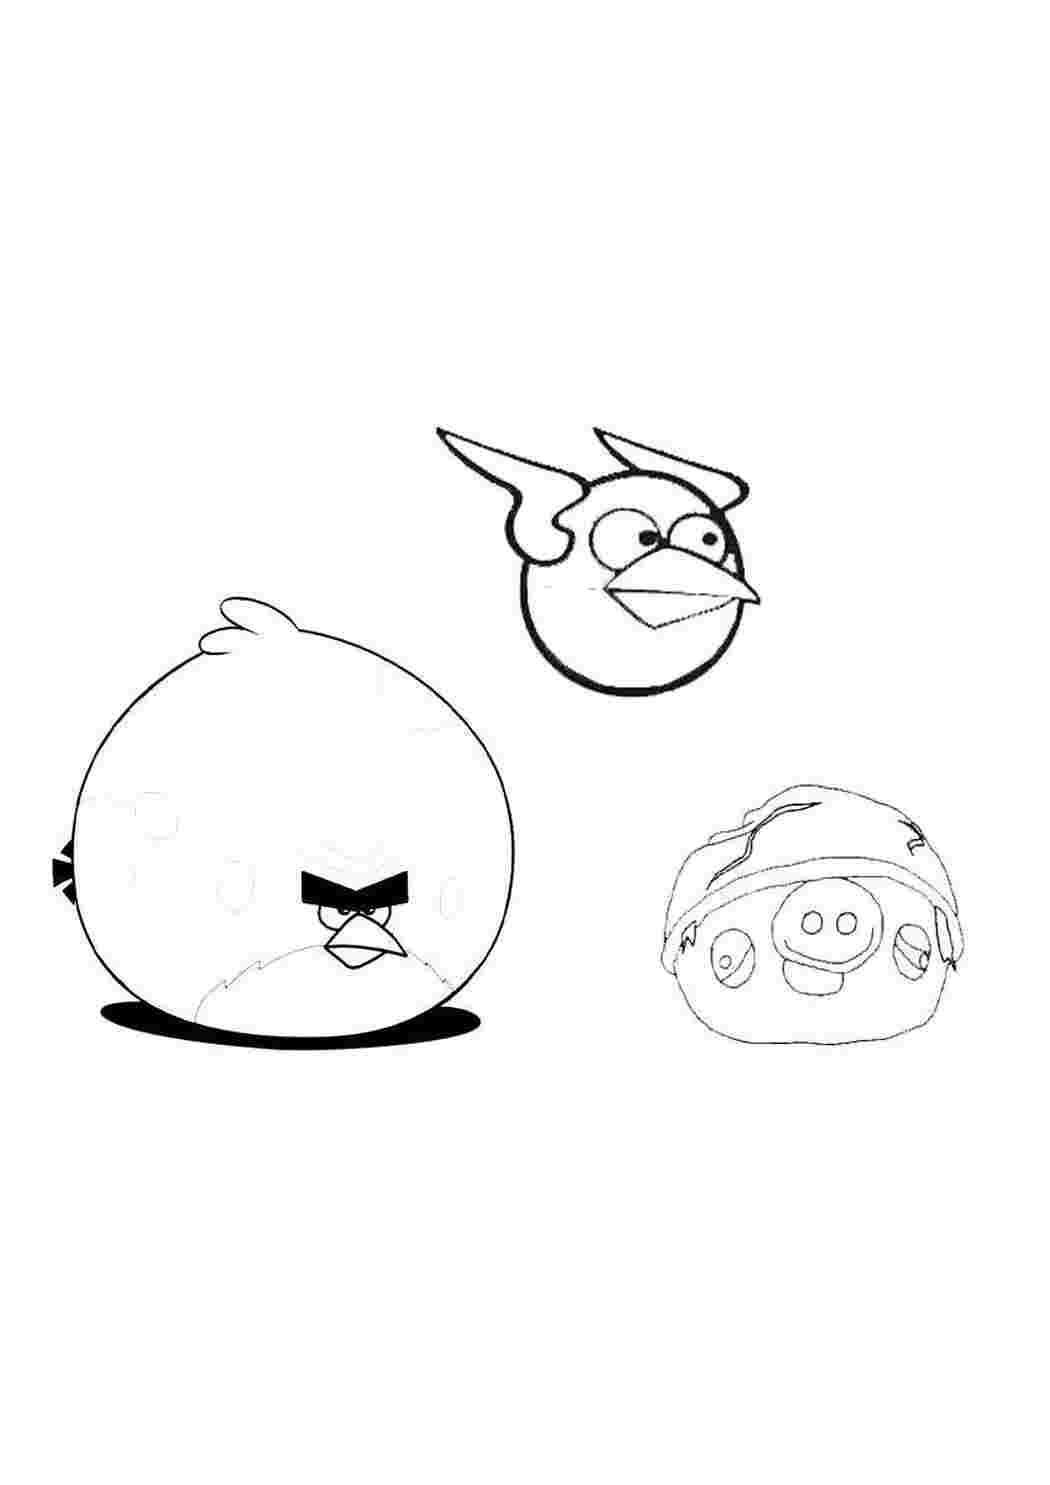 Раскраска Звездные войны Angry Birds. Энгри бёрдс звездные войны